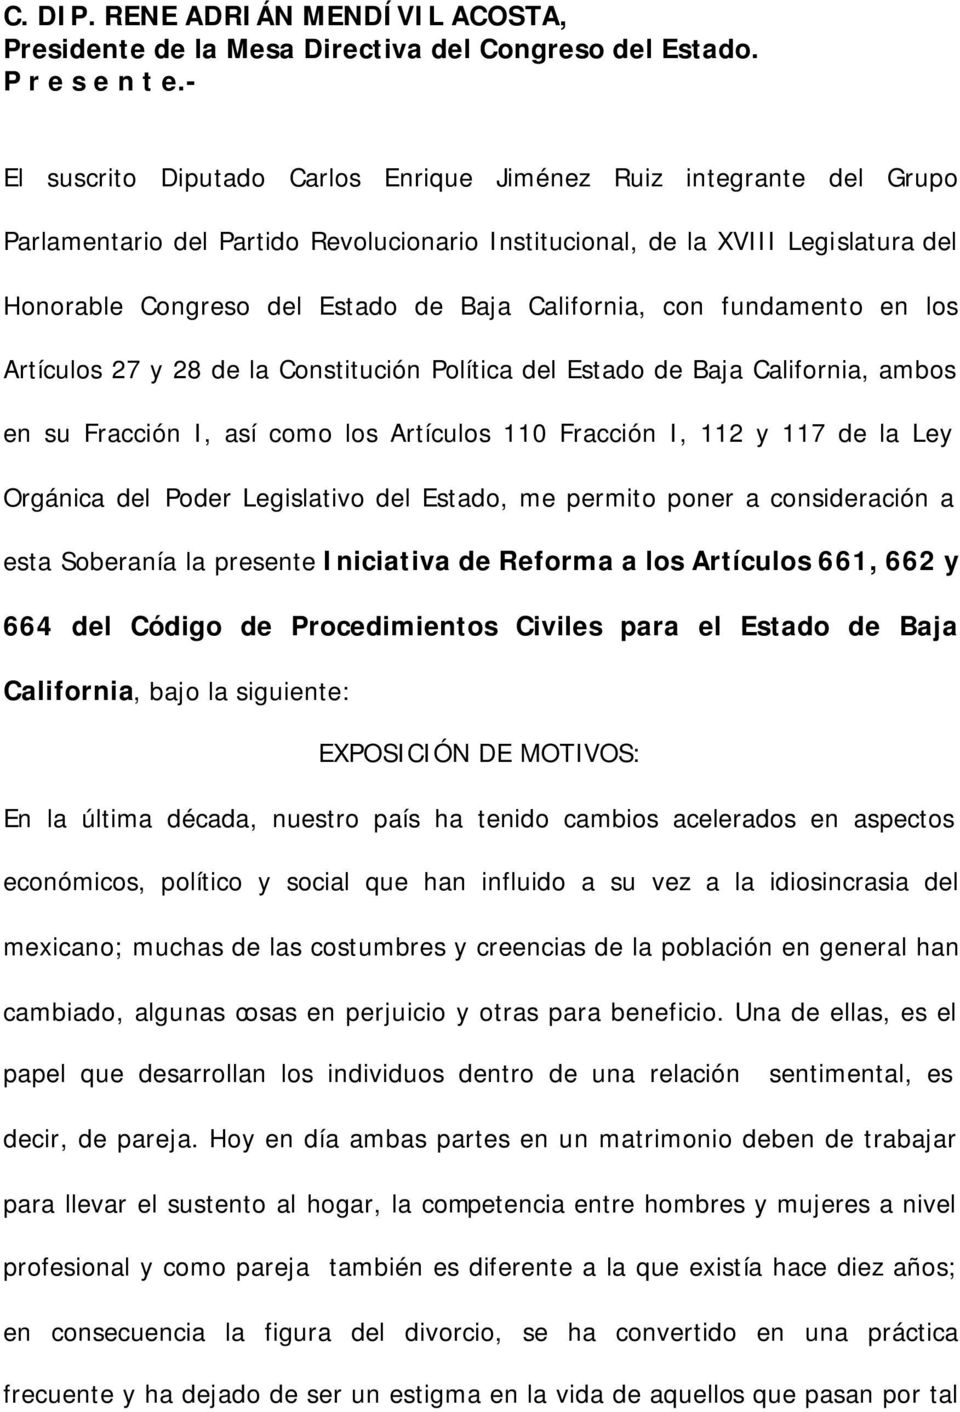 California, con fundamento en los Artículos 27 y 28 de la Constitución Política del Estado de Baja California, ambos en su Fracción I, así como los Artículos 110 Fracción I, 112 y 117 de la Ley